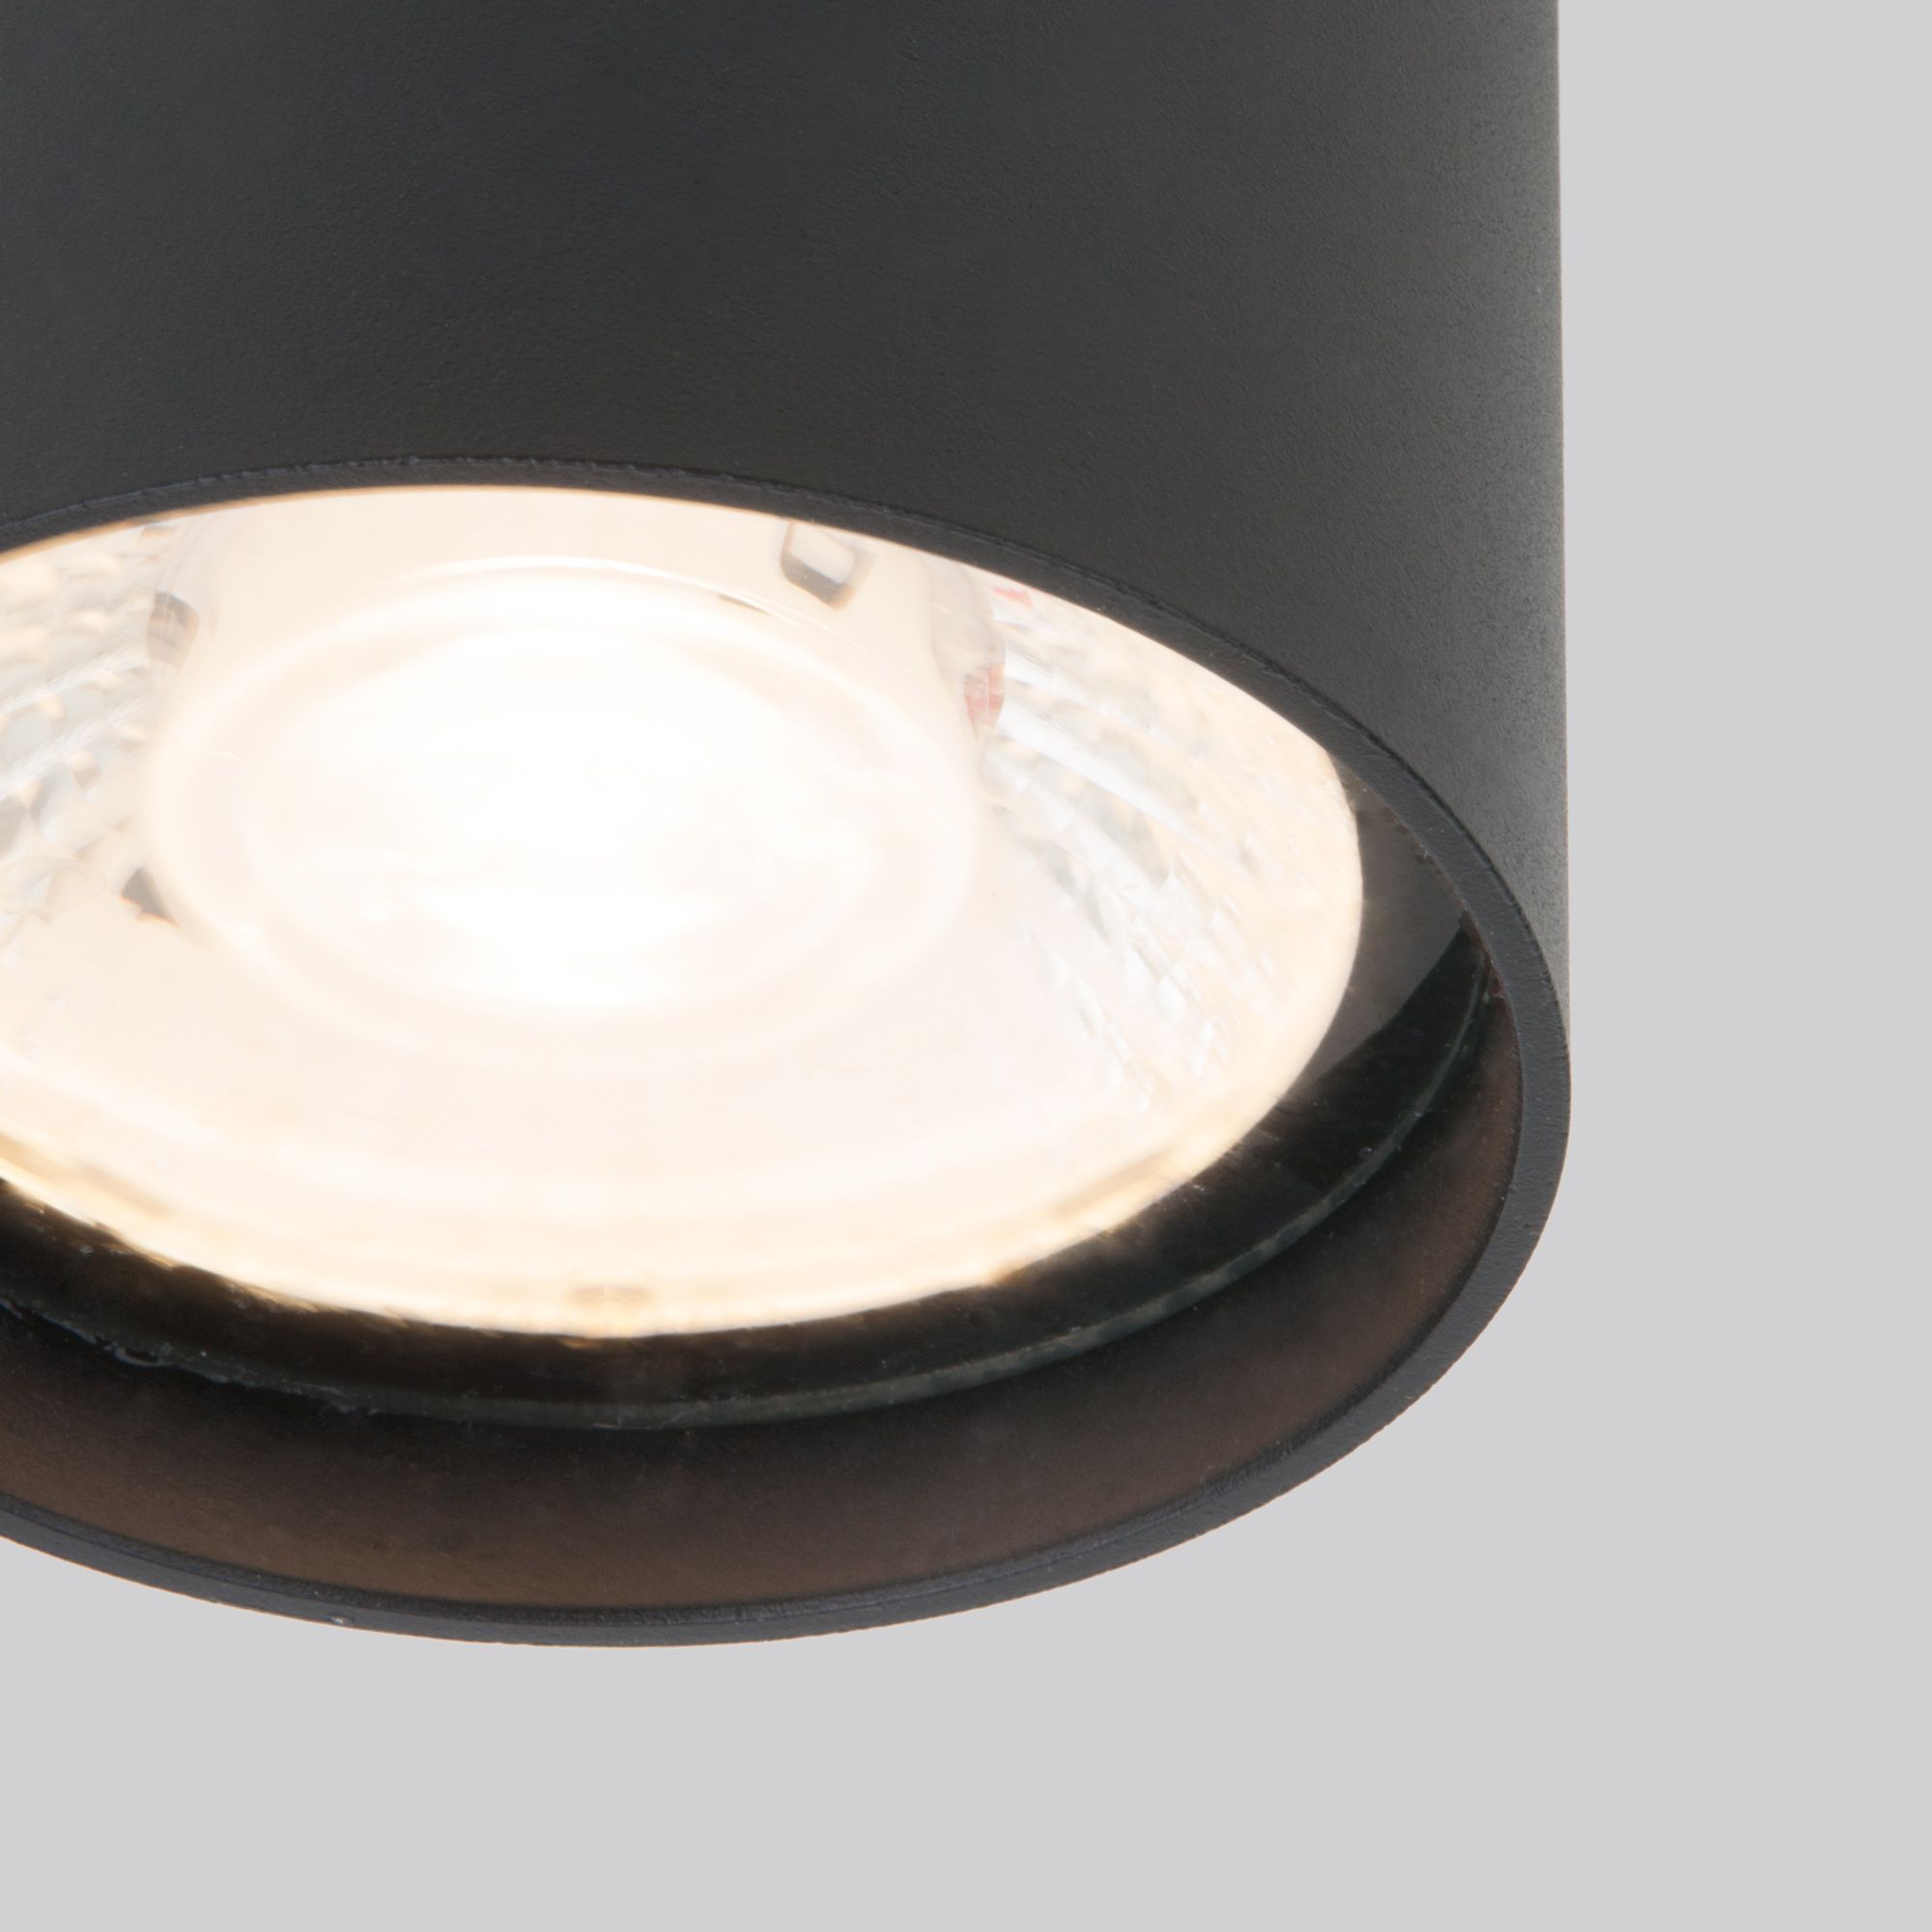 Уличный потолочный светильник Light LED 2105 IP54 35132/H черный